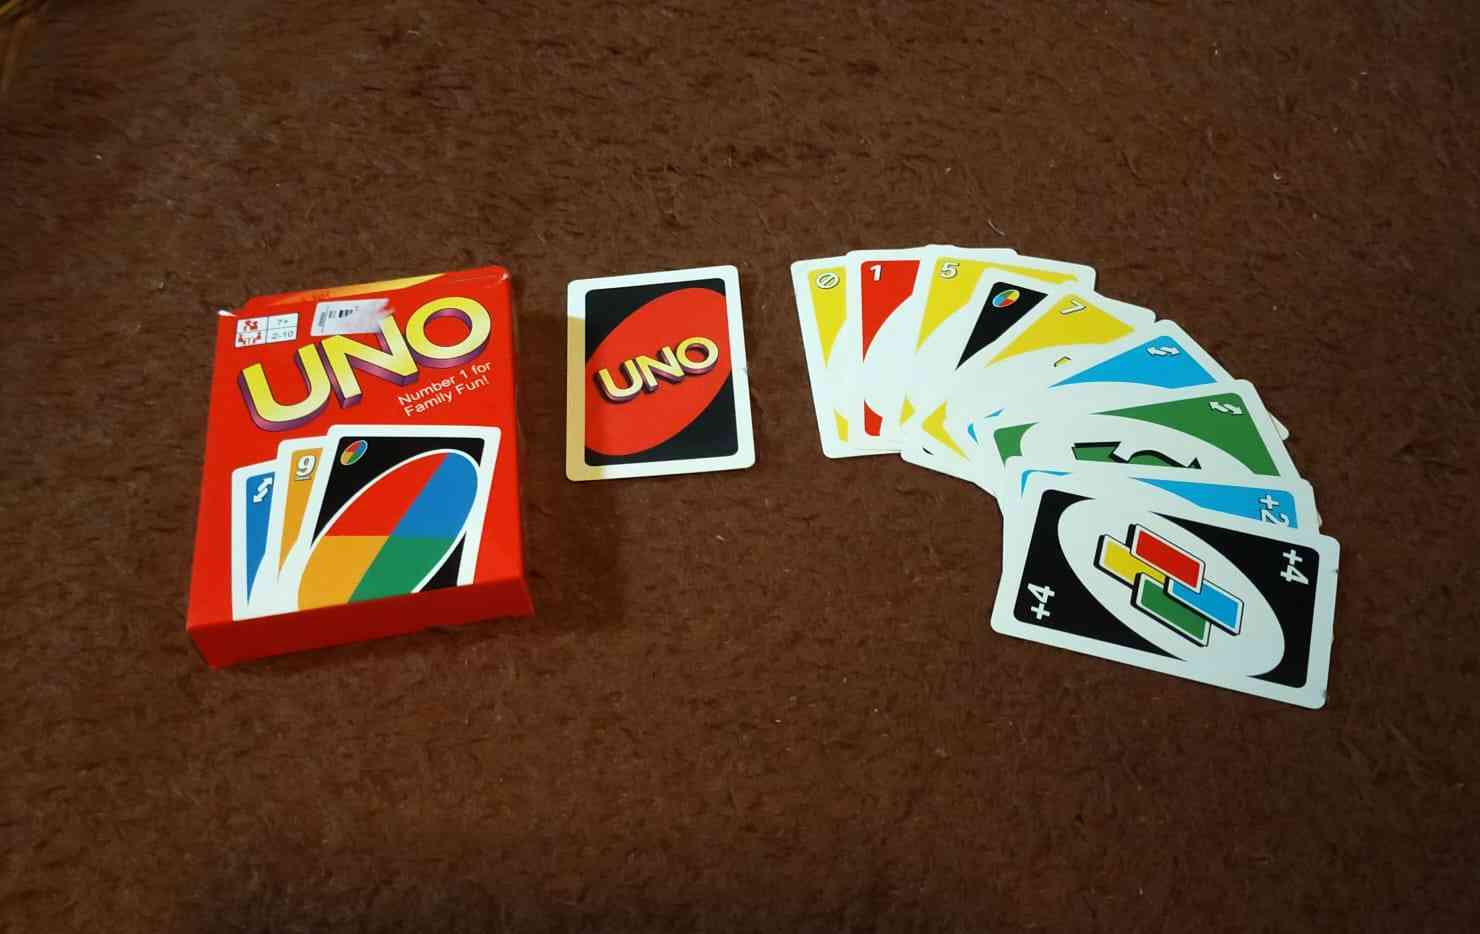 Tingkatkan Kebahagiaan Liburan dengan Game Uno bersama Keluarga